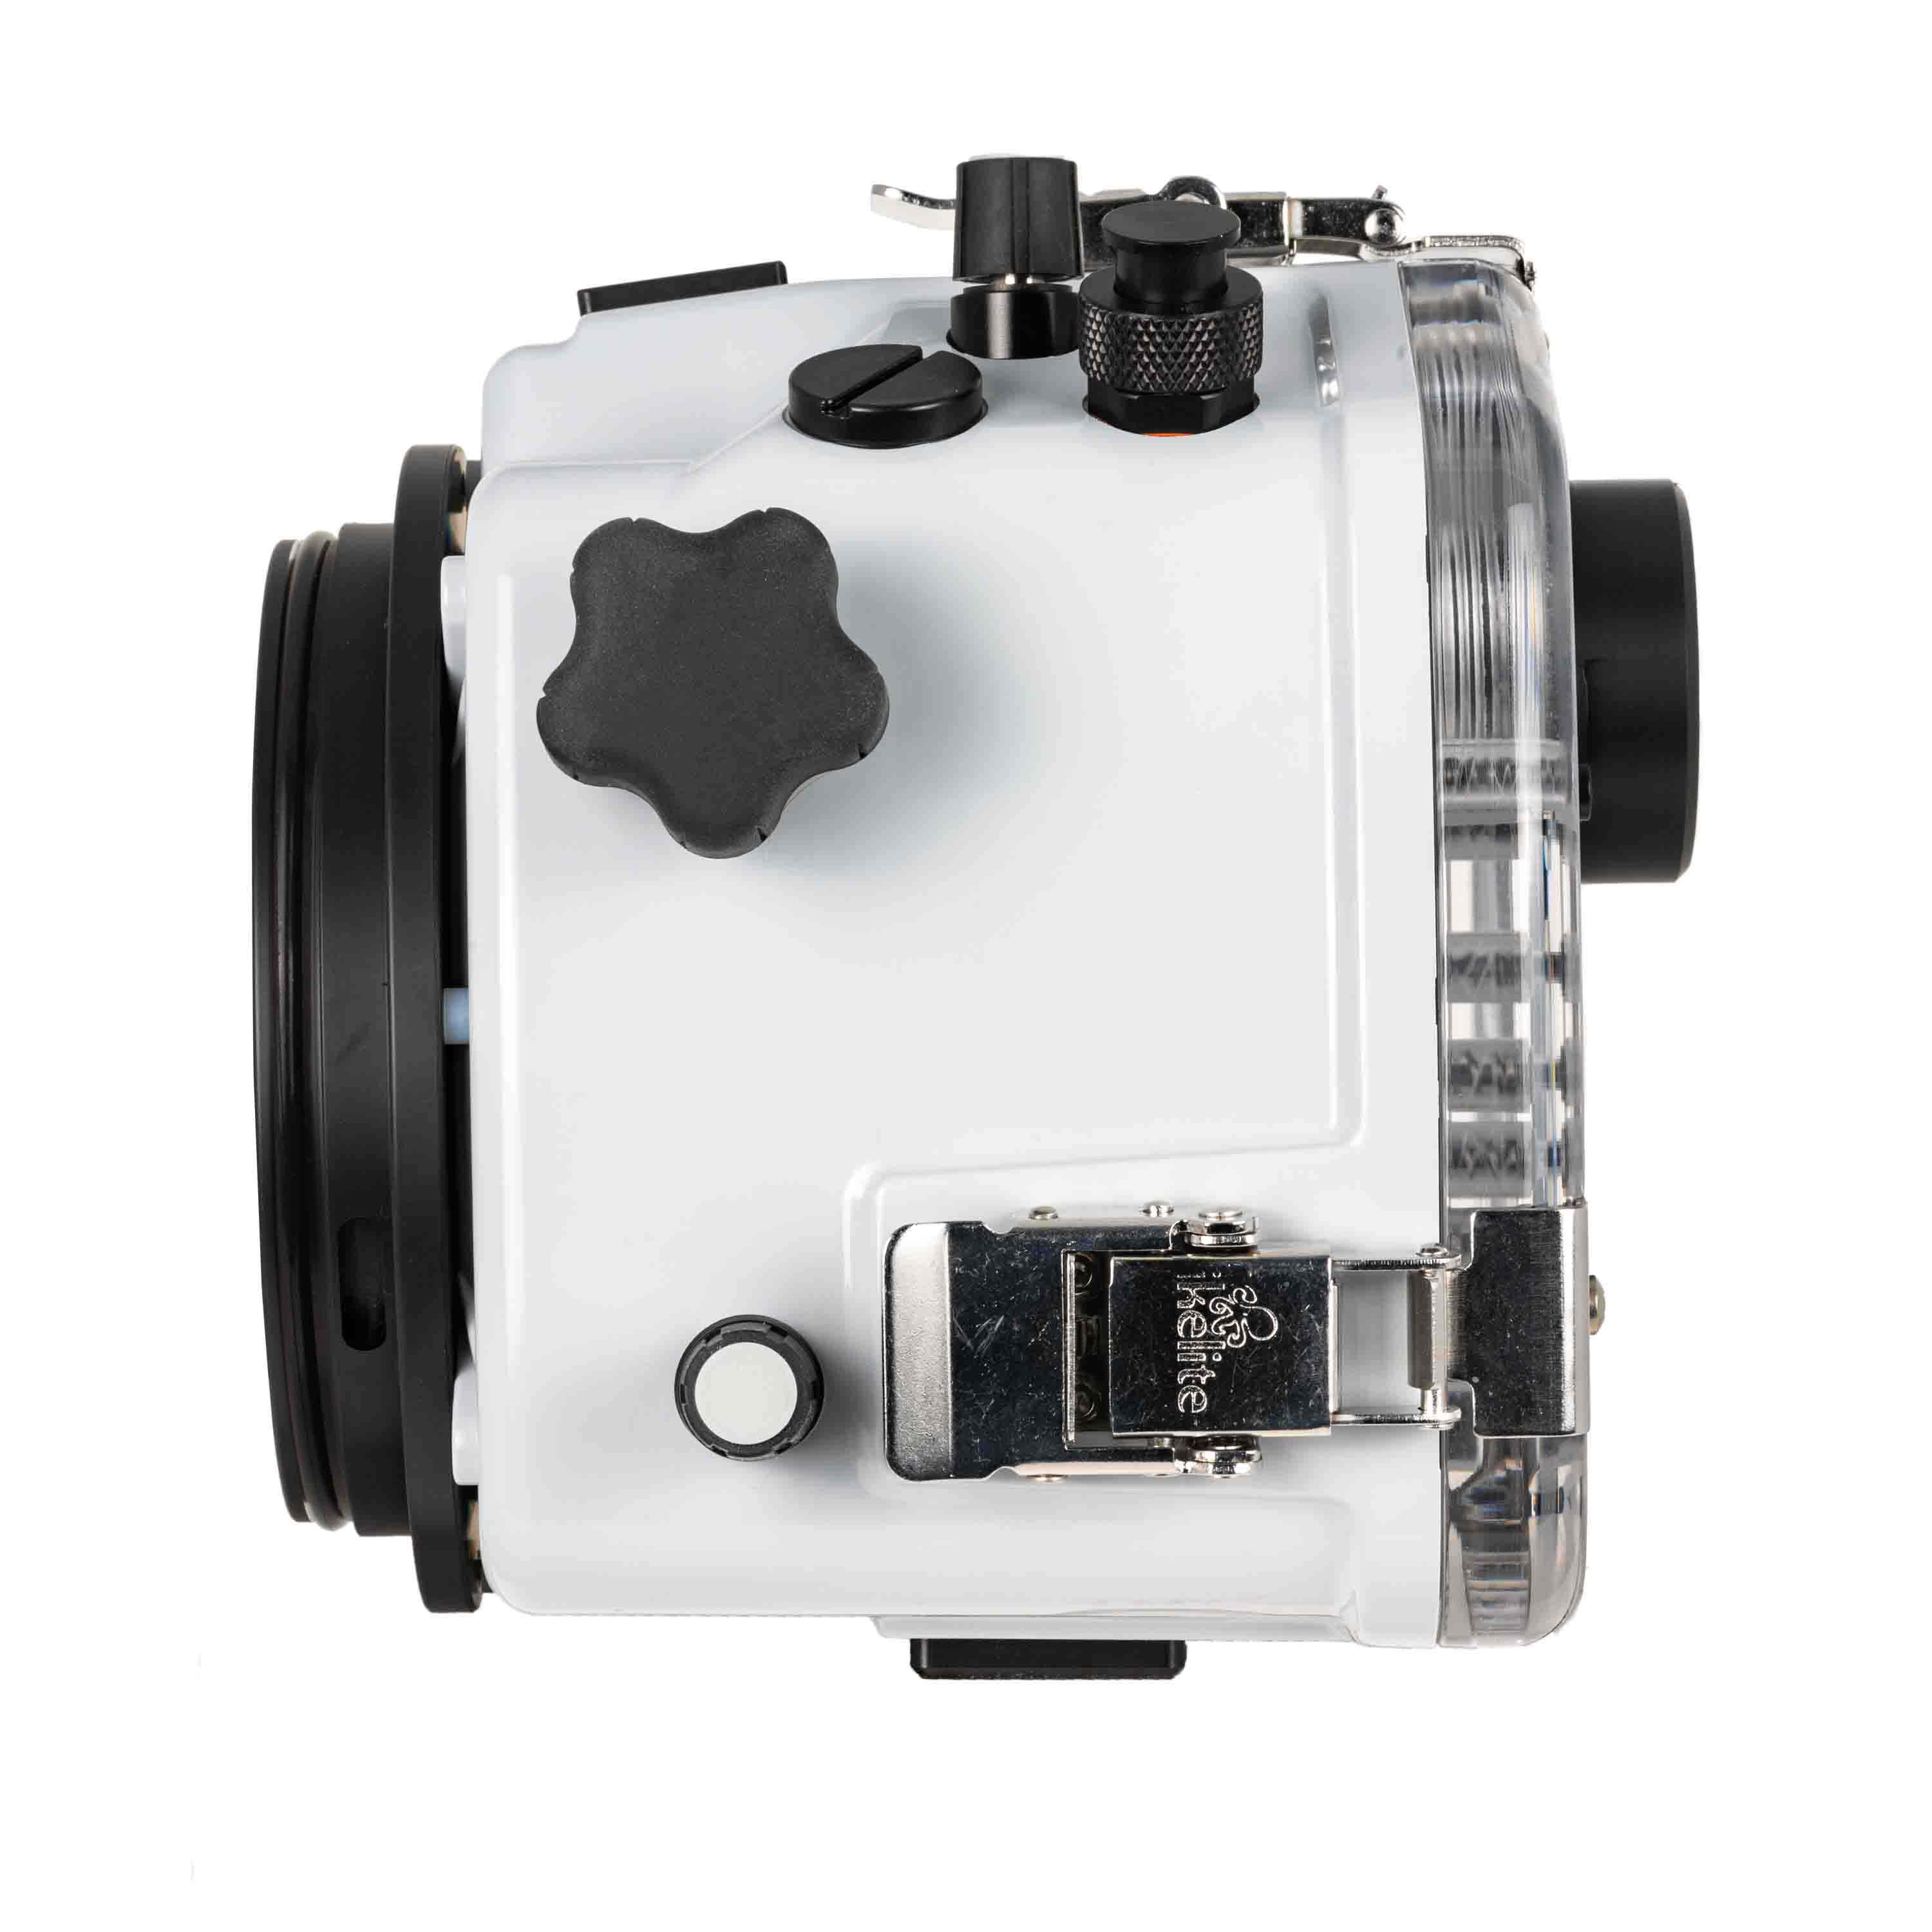 Panasonic Lumix S5 IIX Mirrorless Camera with 24-105mm Lens Kit